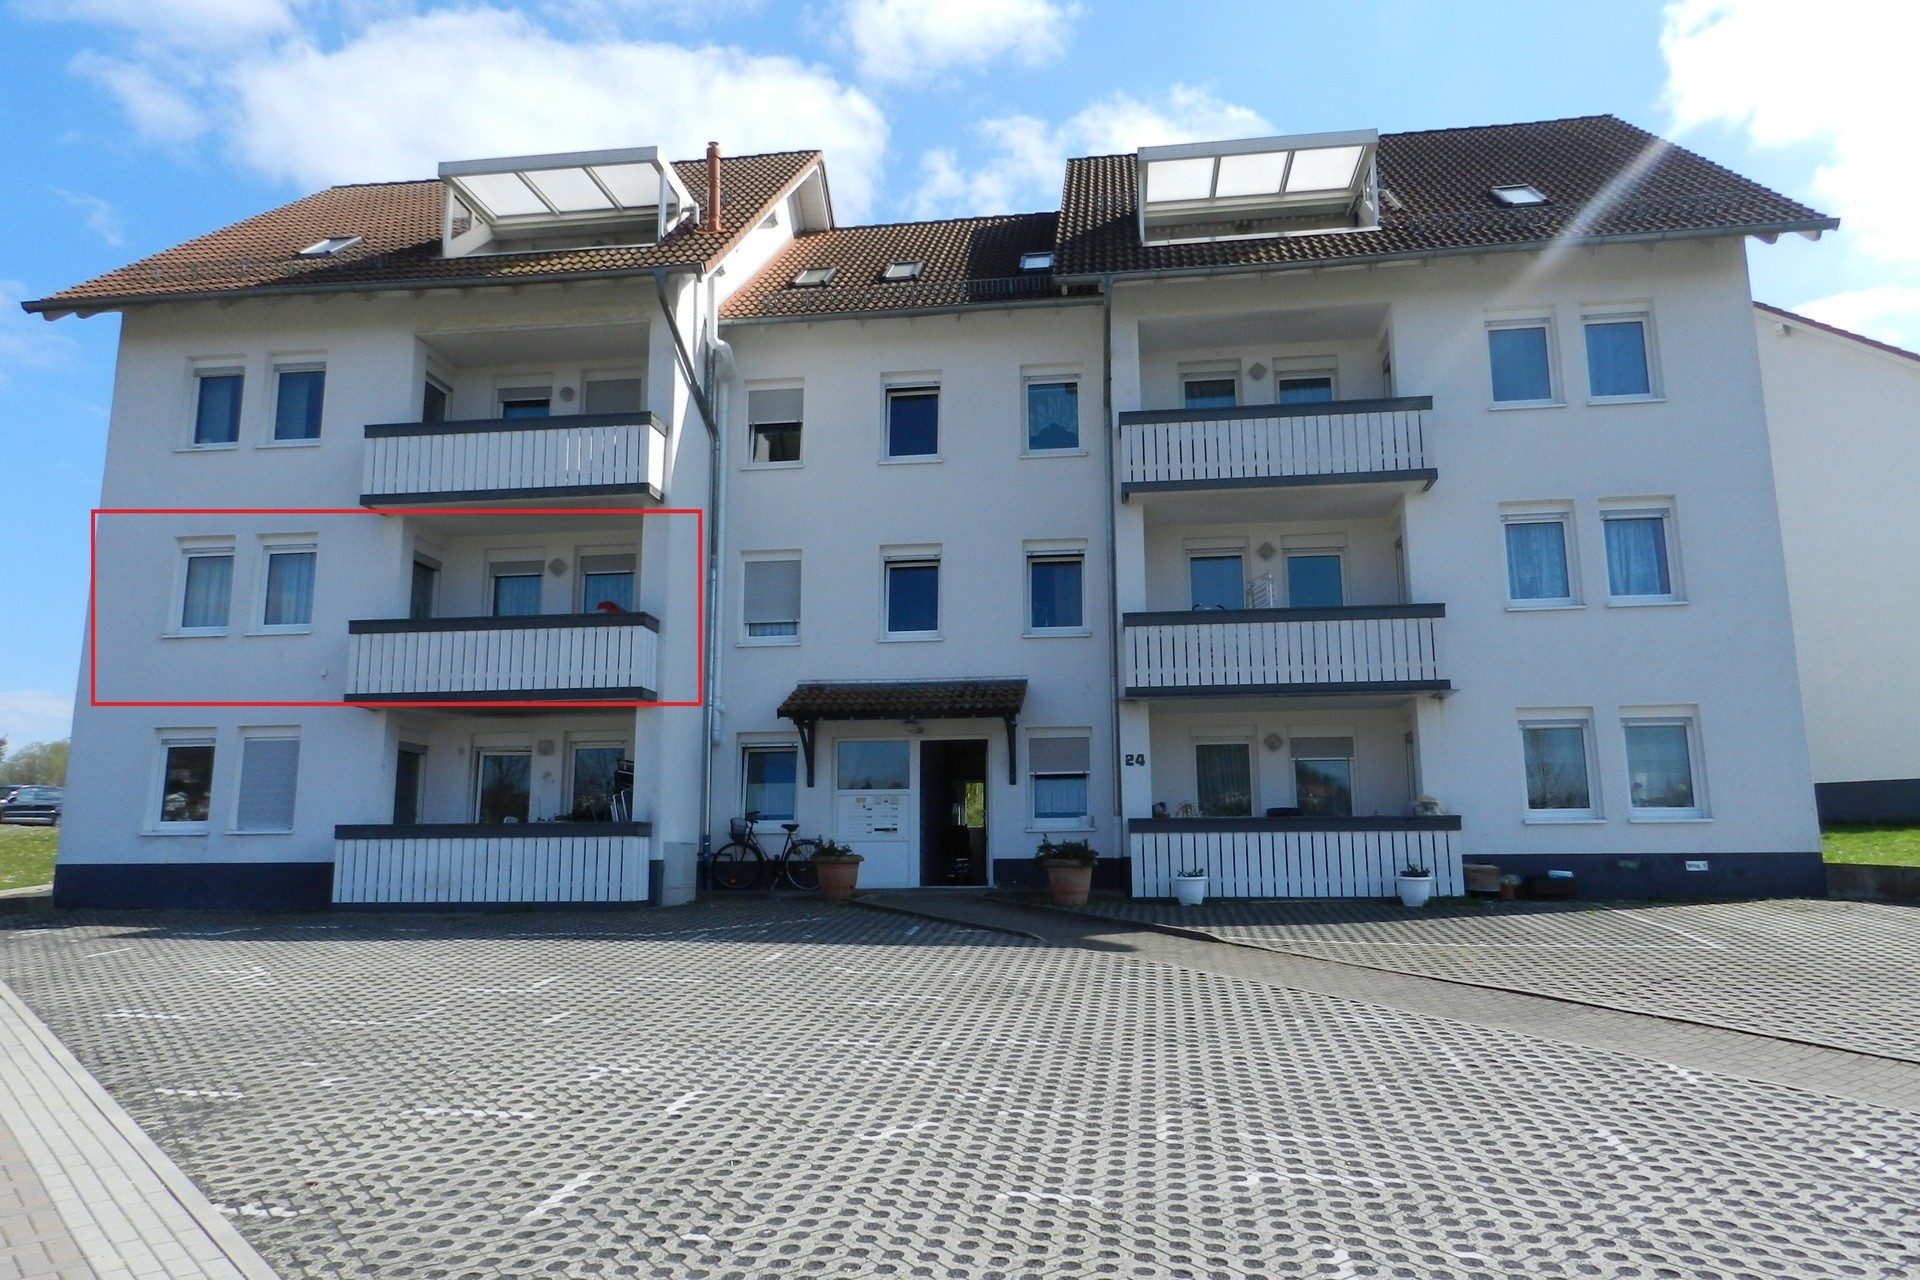 Immobilienangebot - Homberg - Alle - Renovierte 3ZKB Wohnung mit schönem Ausblick auf Homberg (Efze)!